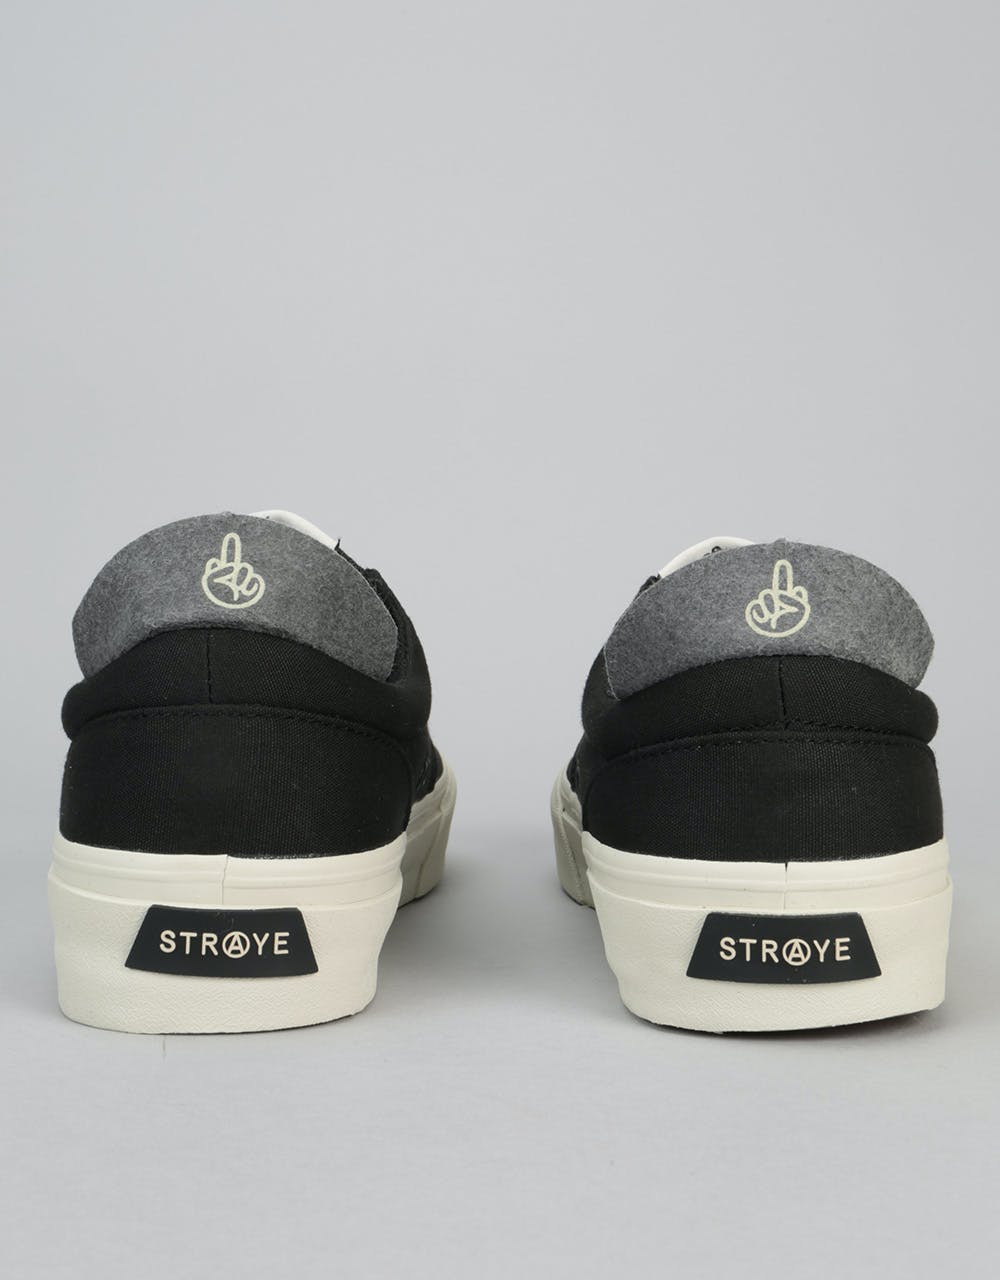 Straye Fairfax Skate Shoes - Black/Bone Canvas